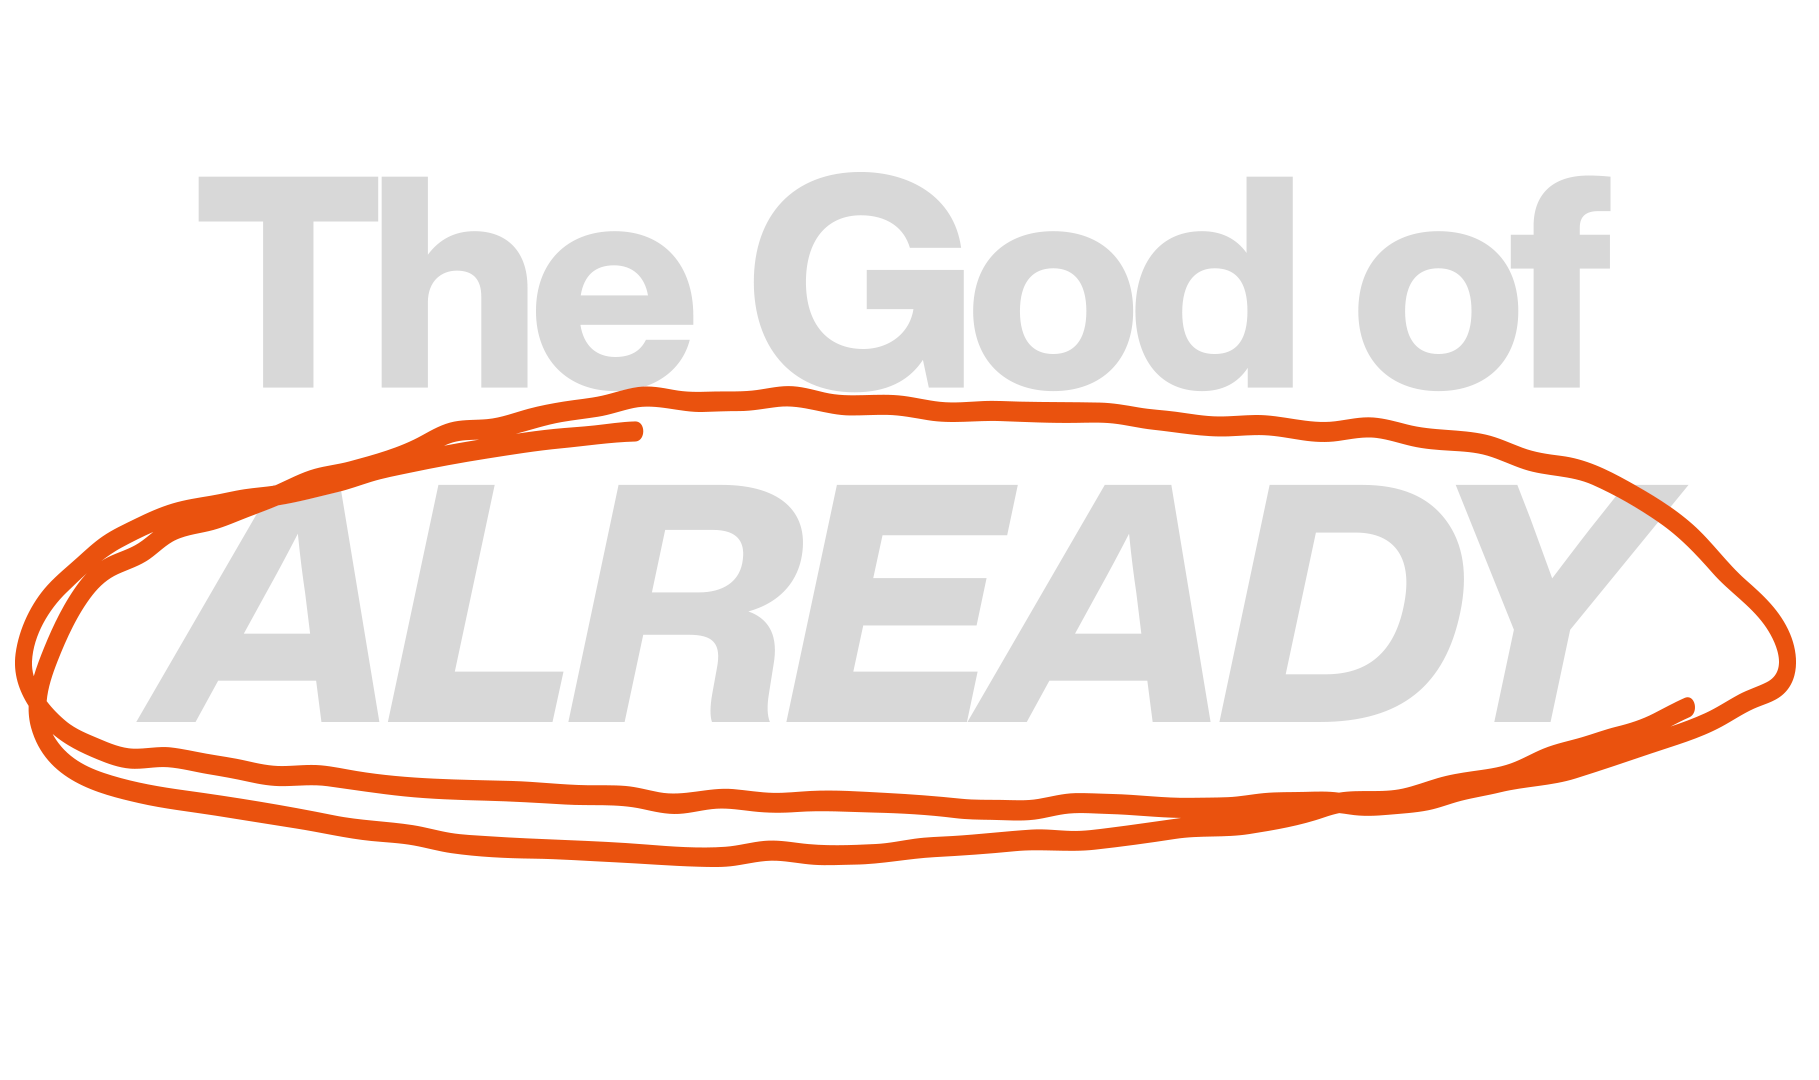 The God Of Already